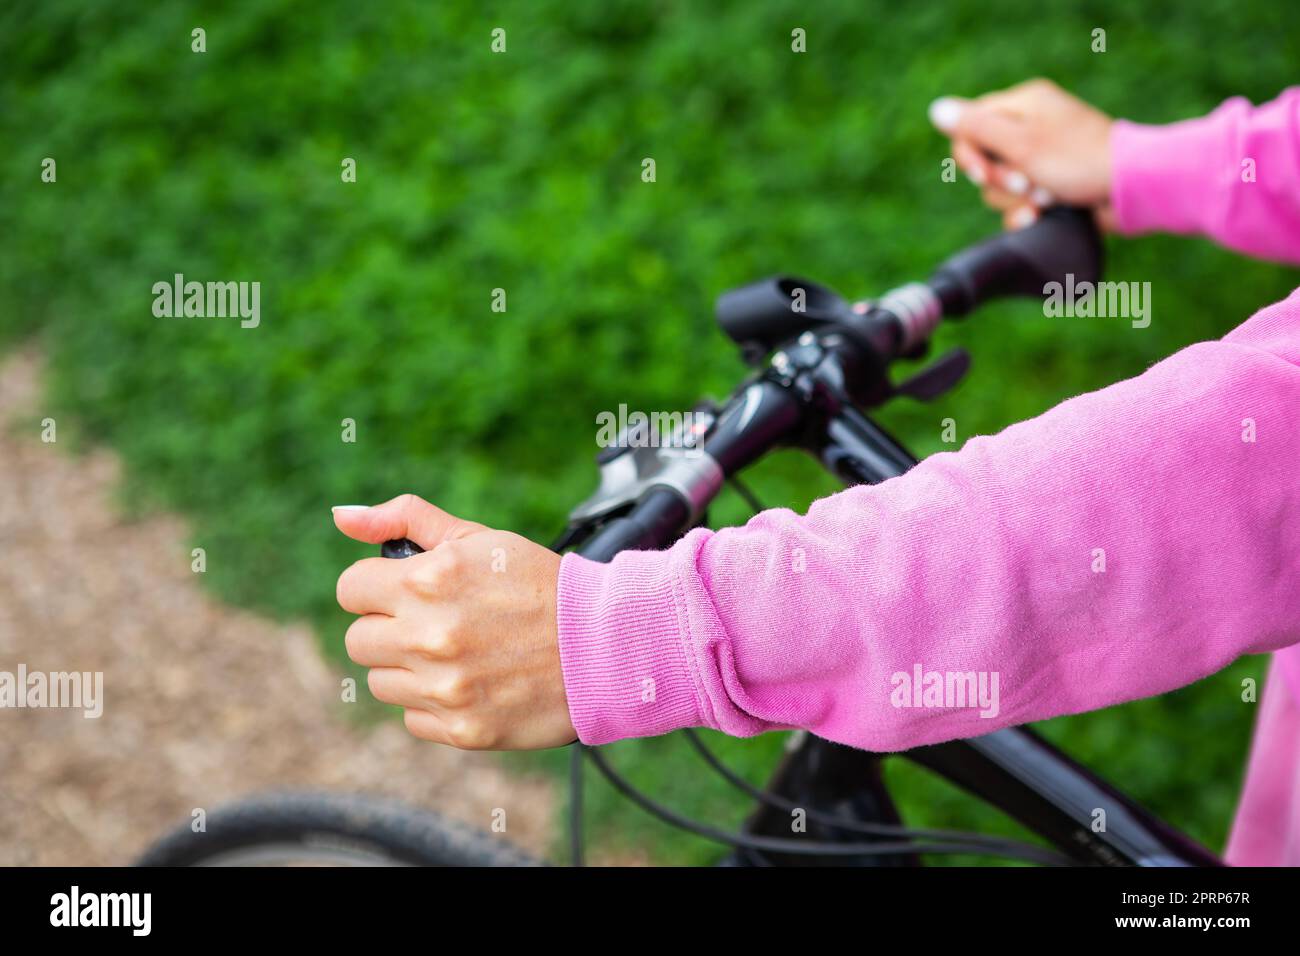 Ein Mädchen in einem rosa Sweatshirt hält sich am Lenker eines Fahrrads fest, eine Fahrradtour im Park. Erholung im Freien ist gut für die Gesundheit. Stockfoto